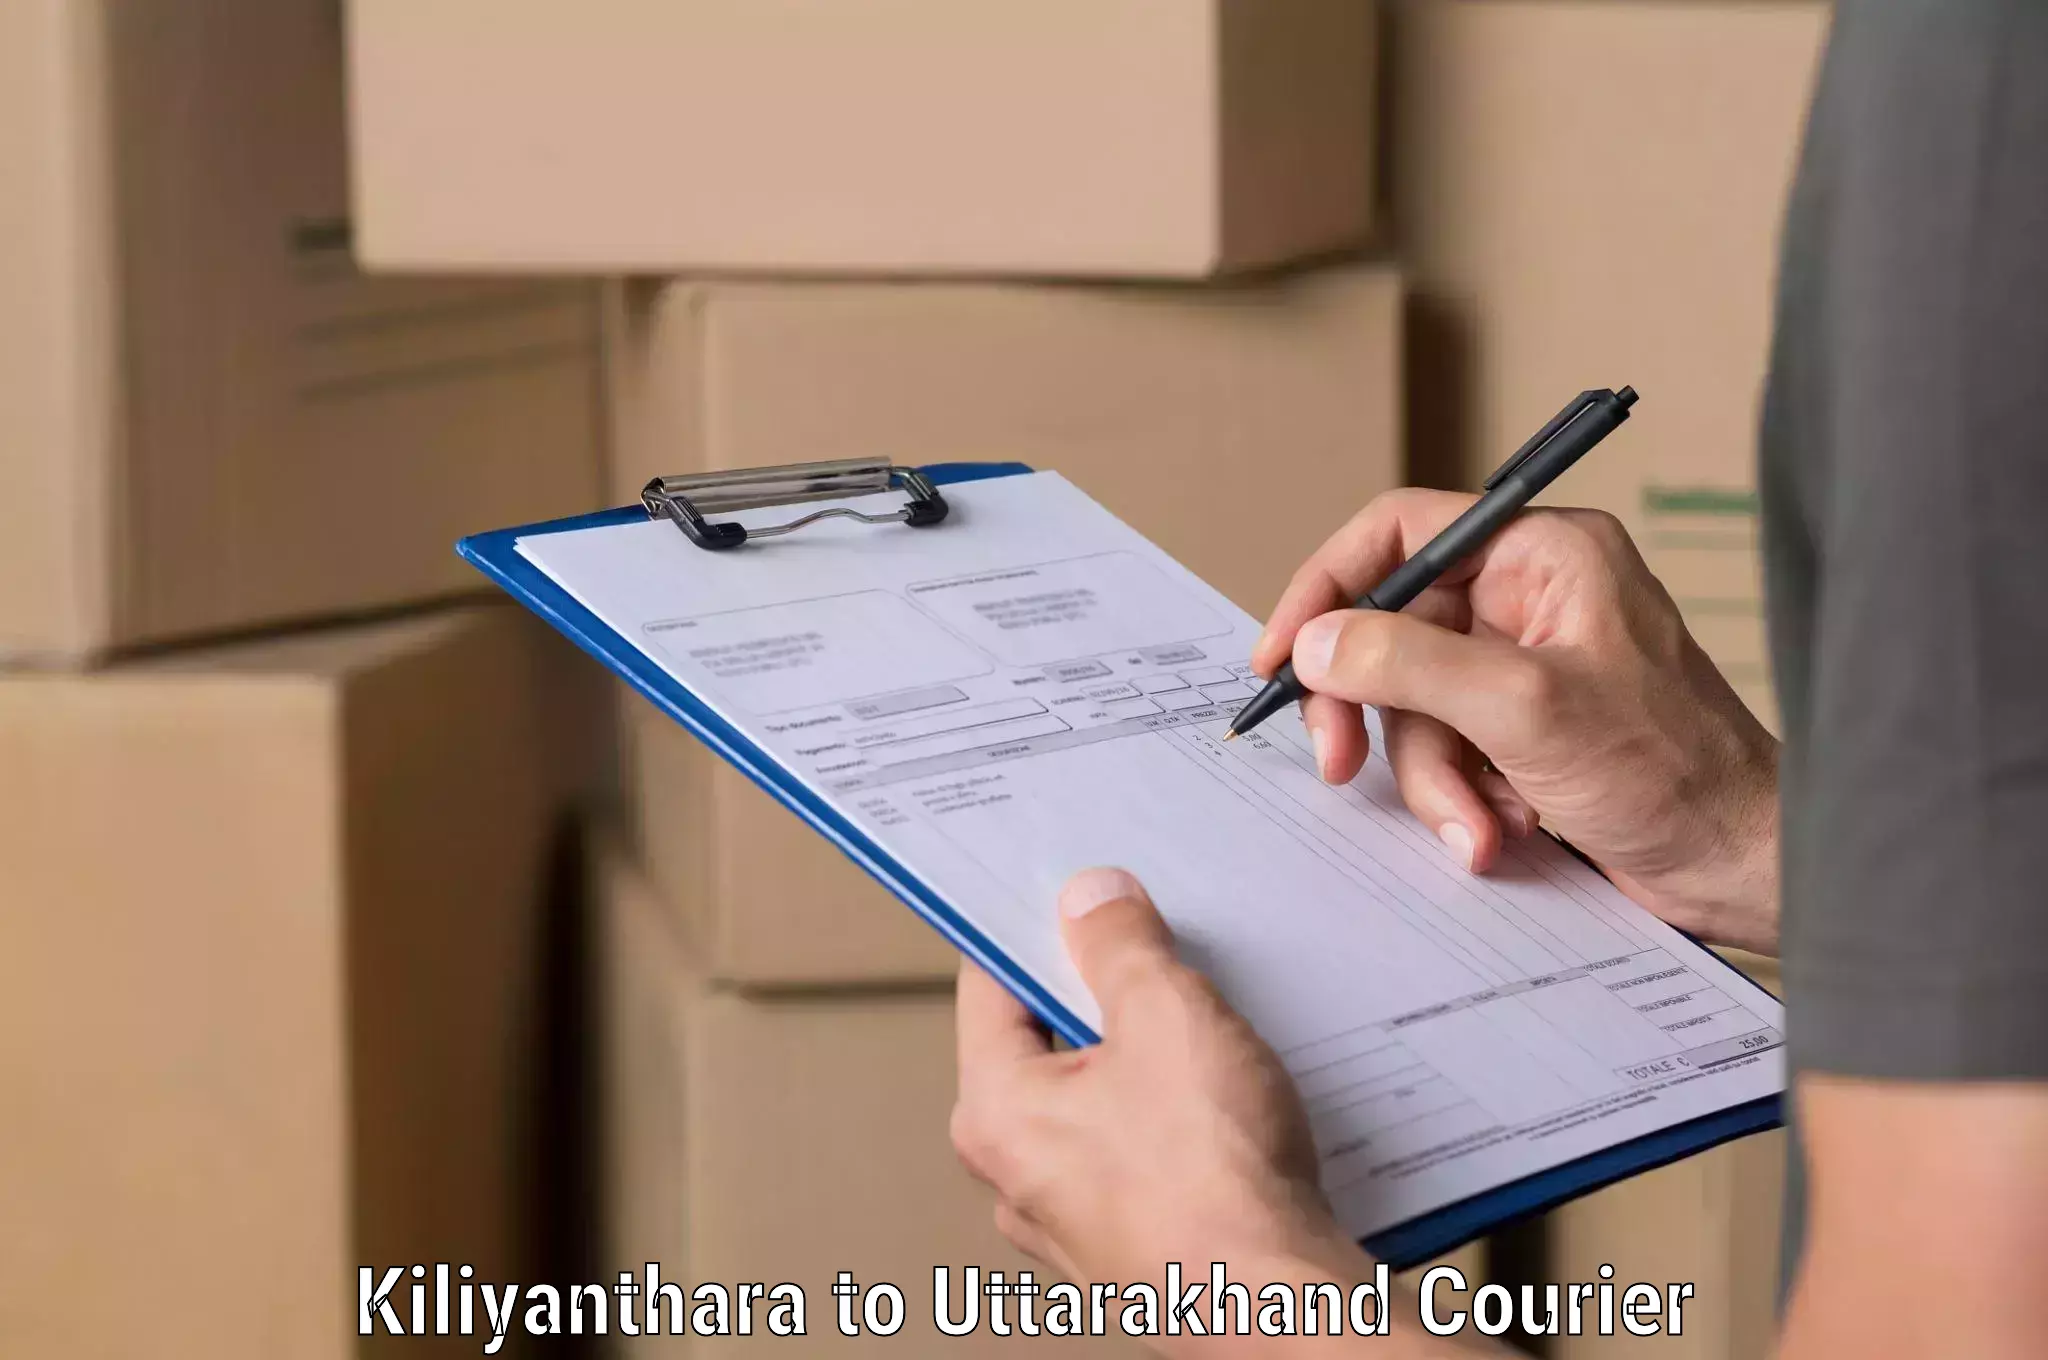 Pharmaceutical courier Kiliyanthara to Didihat